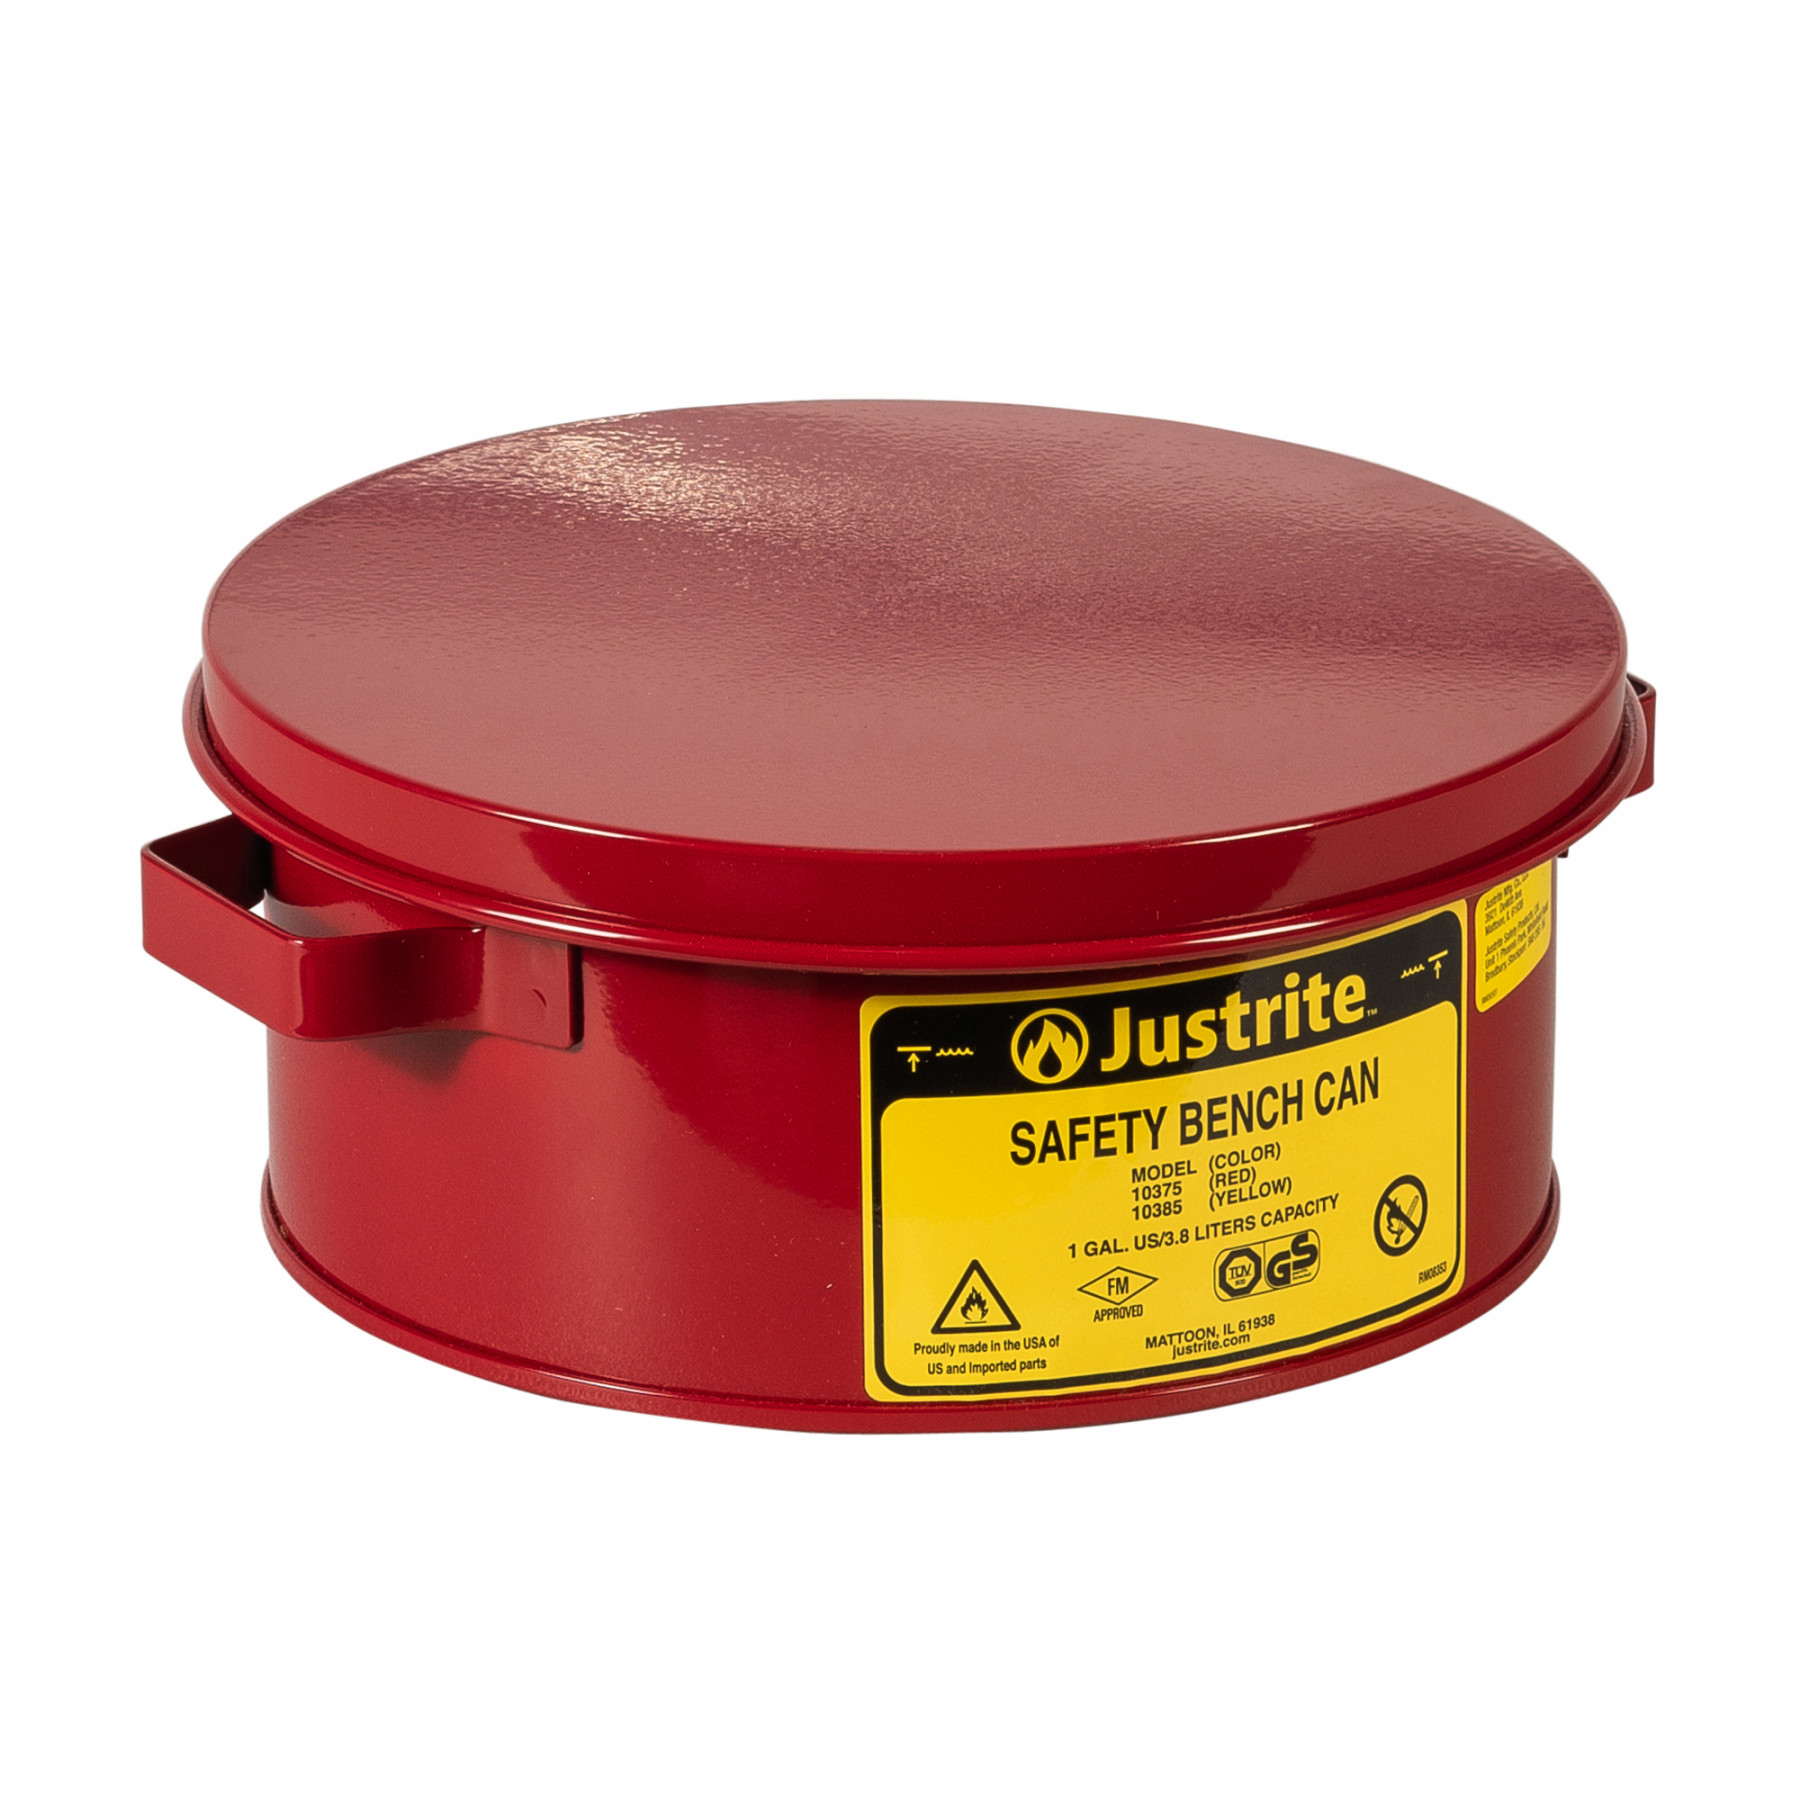 Sicherheits-Tauchbehälter für Kleinteile, 4  Liter in rot